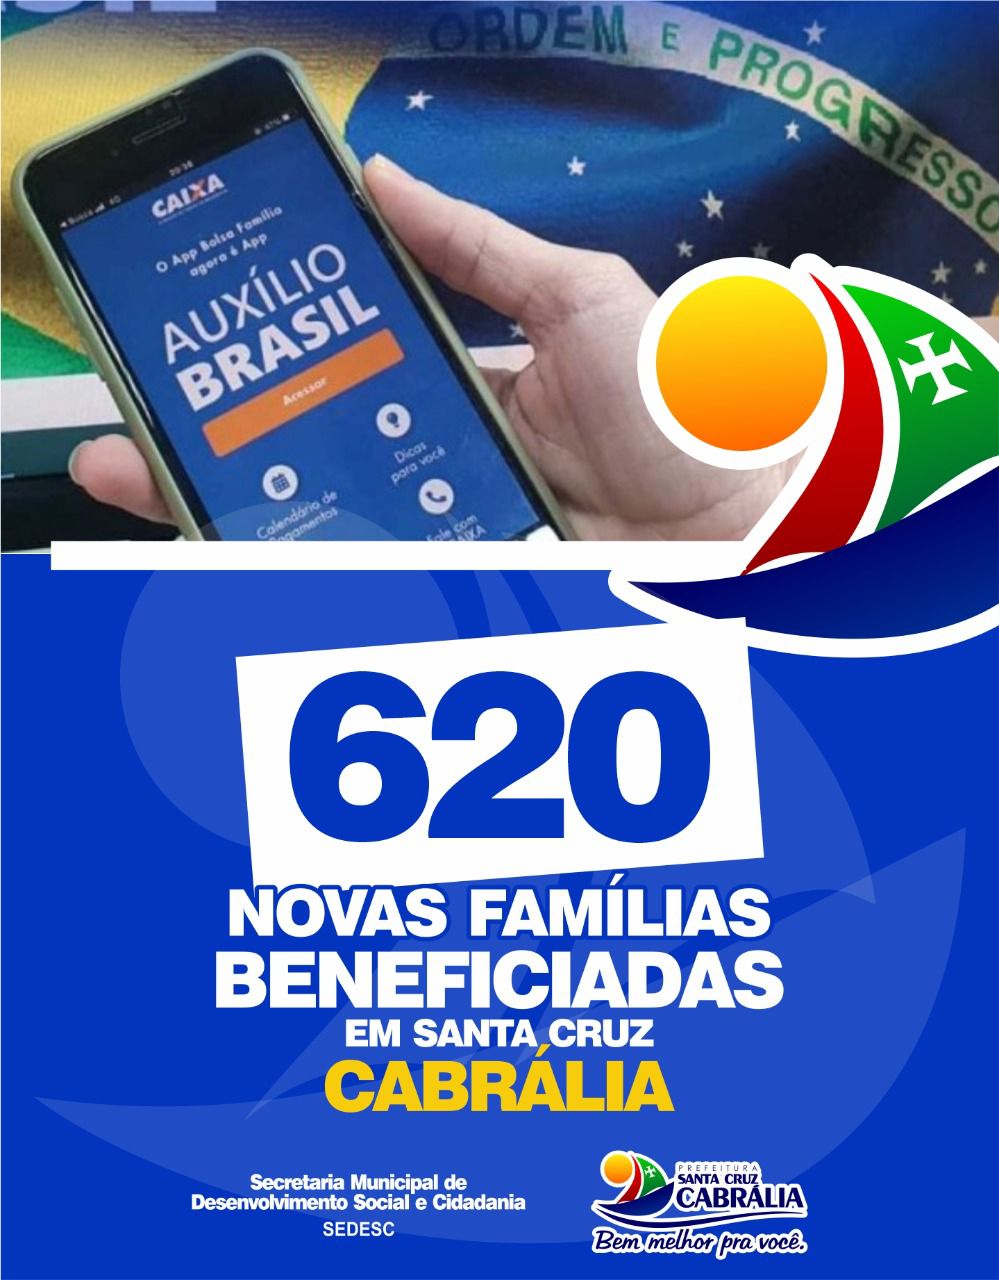 AUXILIO BRASIL: Cabrália tem 620 novas familías beneficiadas